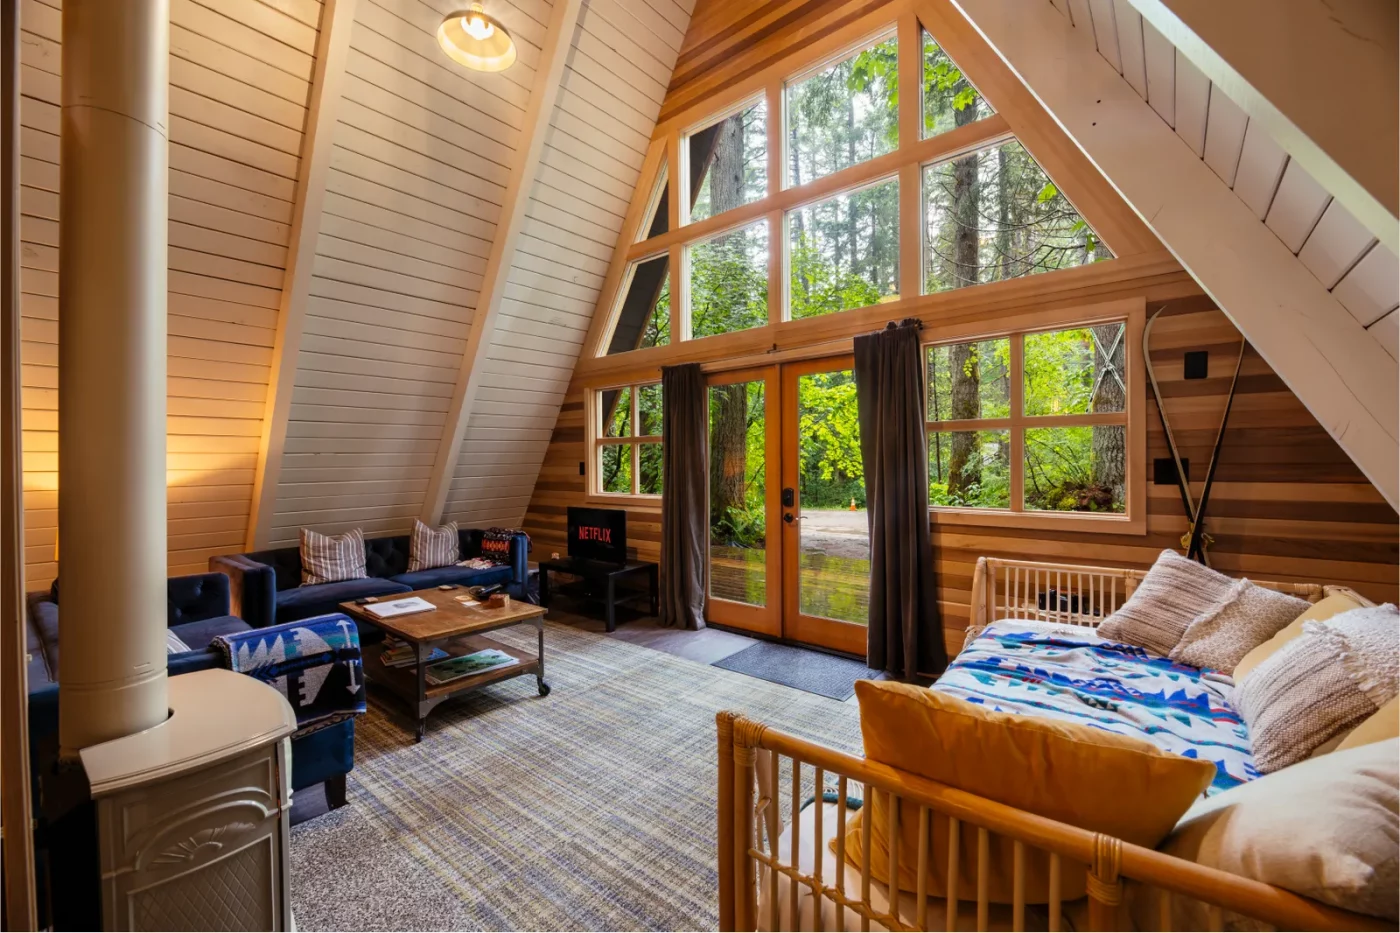 living room cabin interior ideas